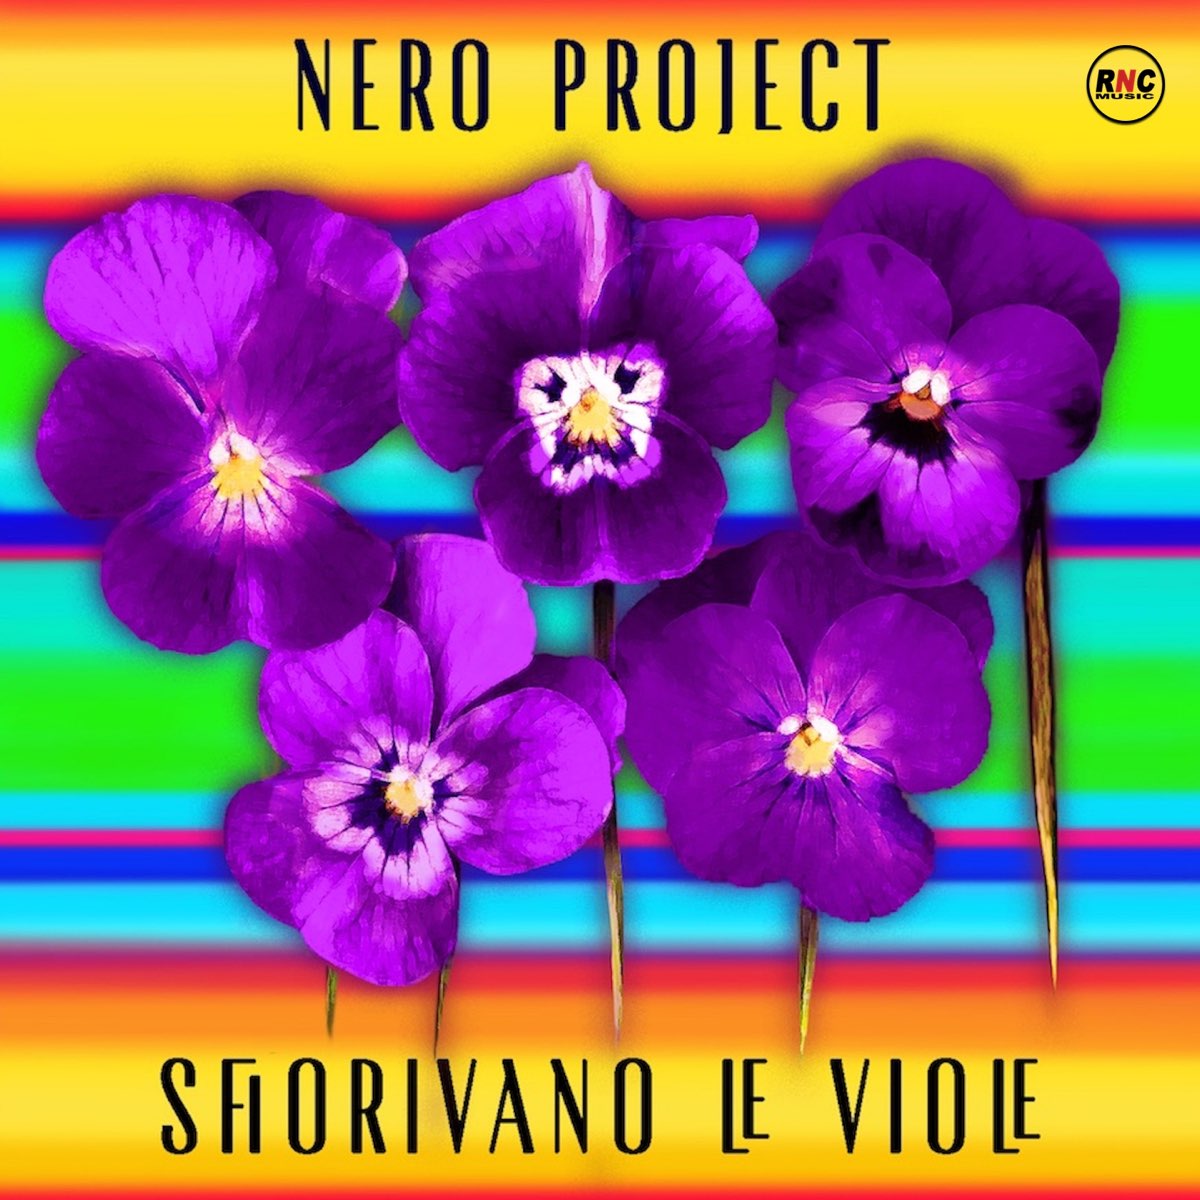 Sfiorivano le viole - Single by Nero Project on Apple Music